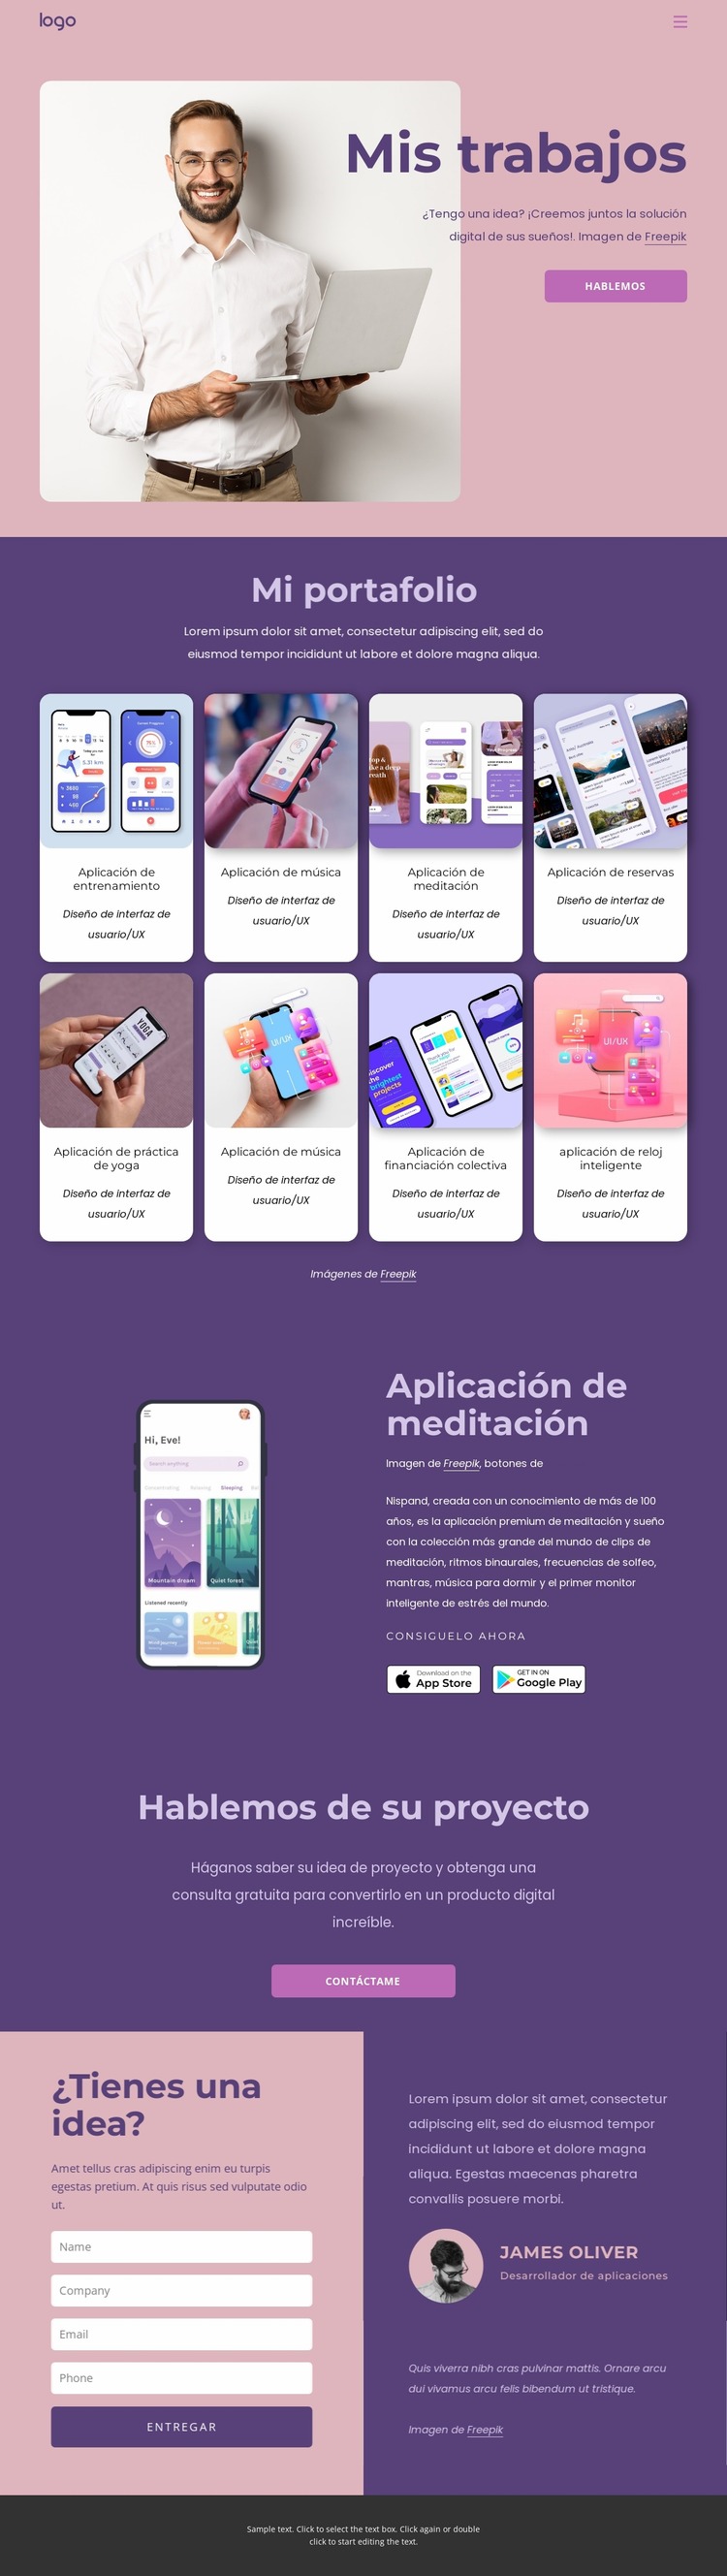 Aplicaciones iOS y Android personalizadas para su negocio Plantilla Joomla